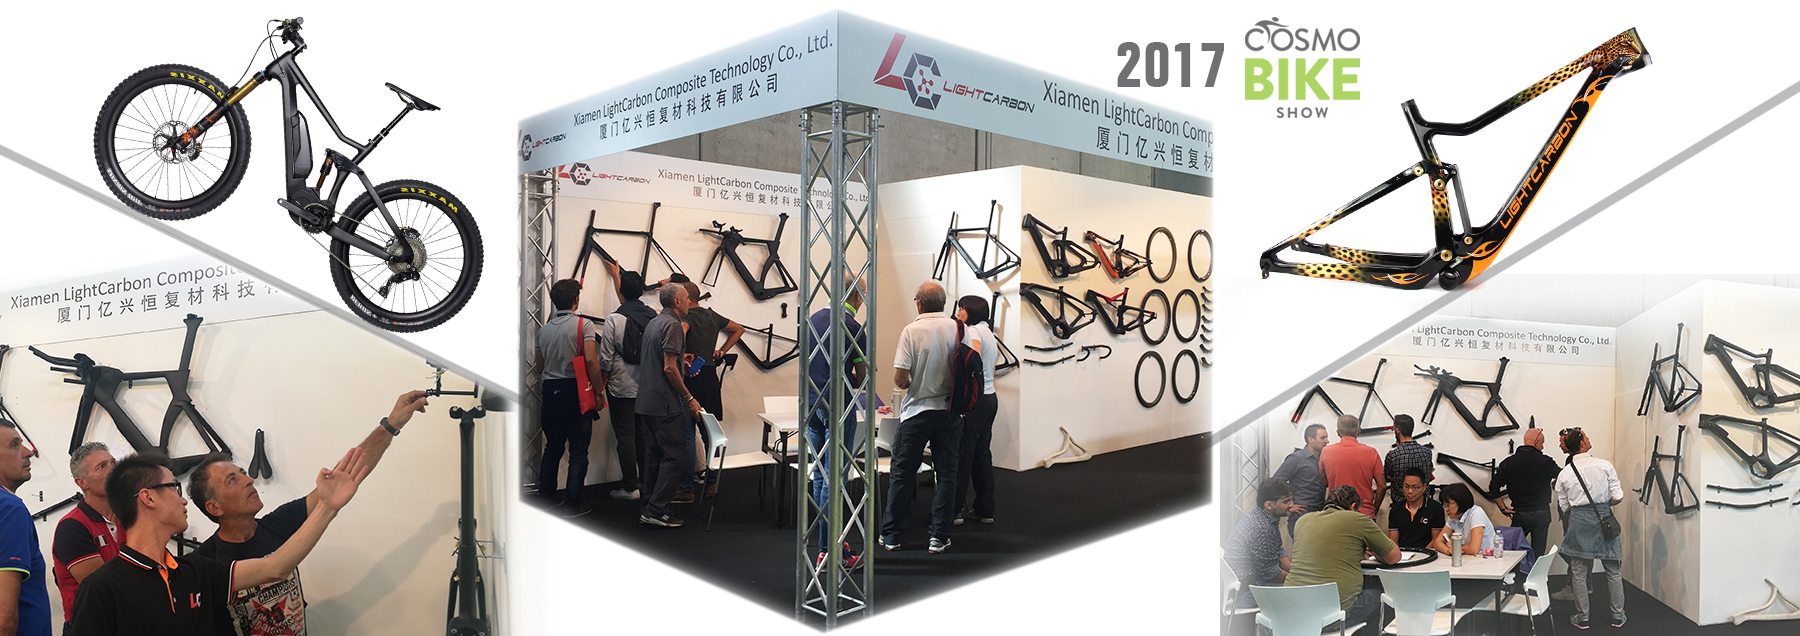 Cosmo bike show 2017 in carbonio leggero